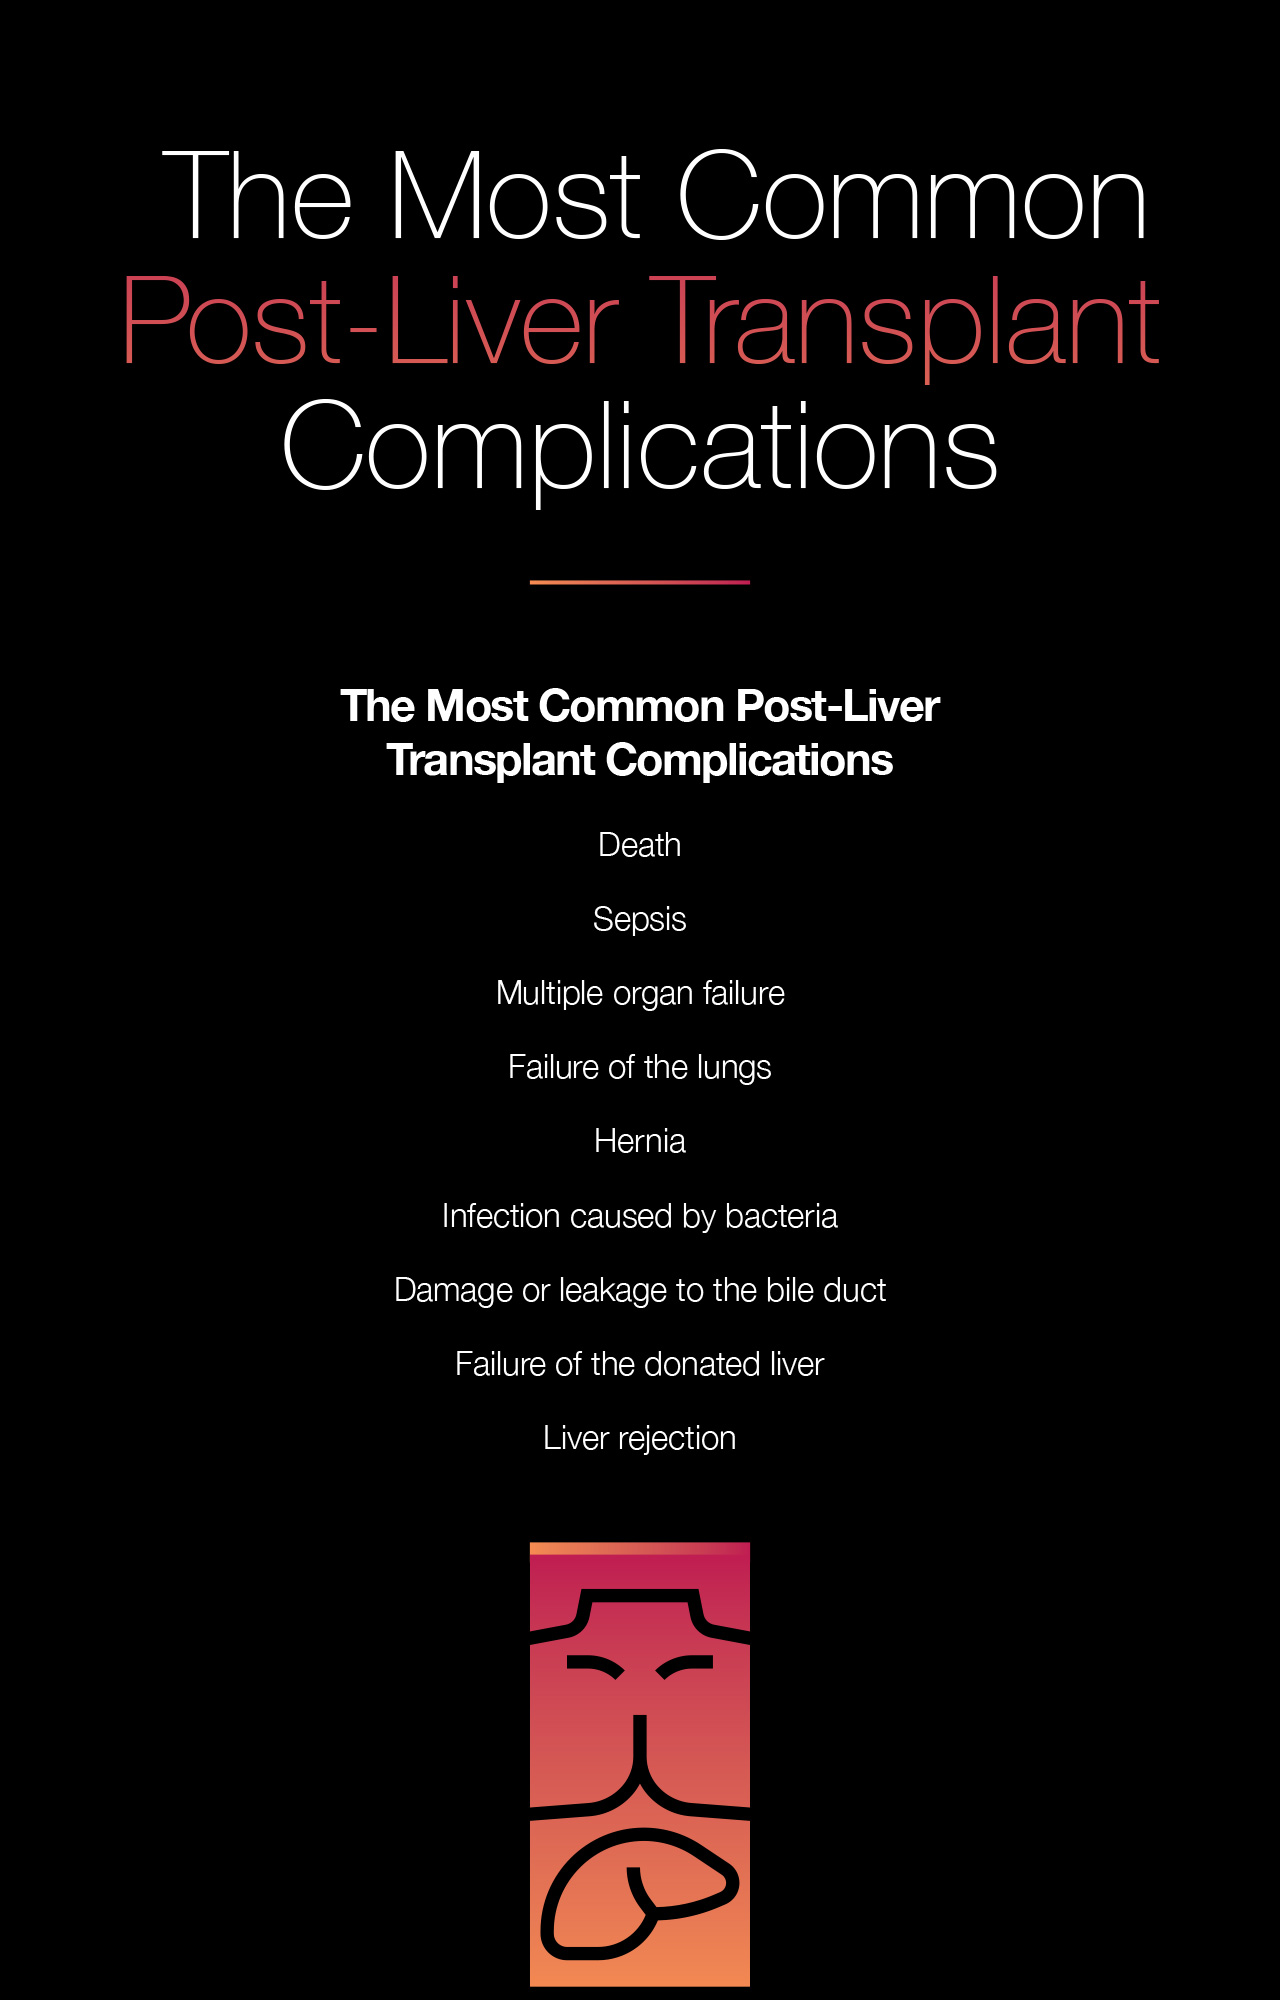 Post-Liver Transplant Complications